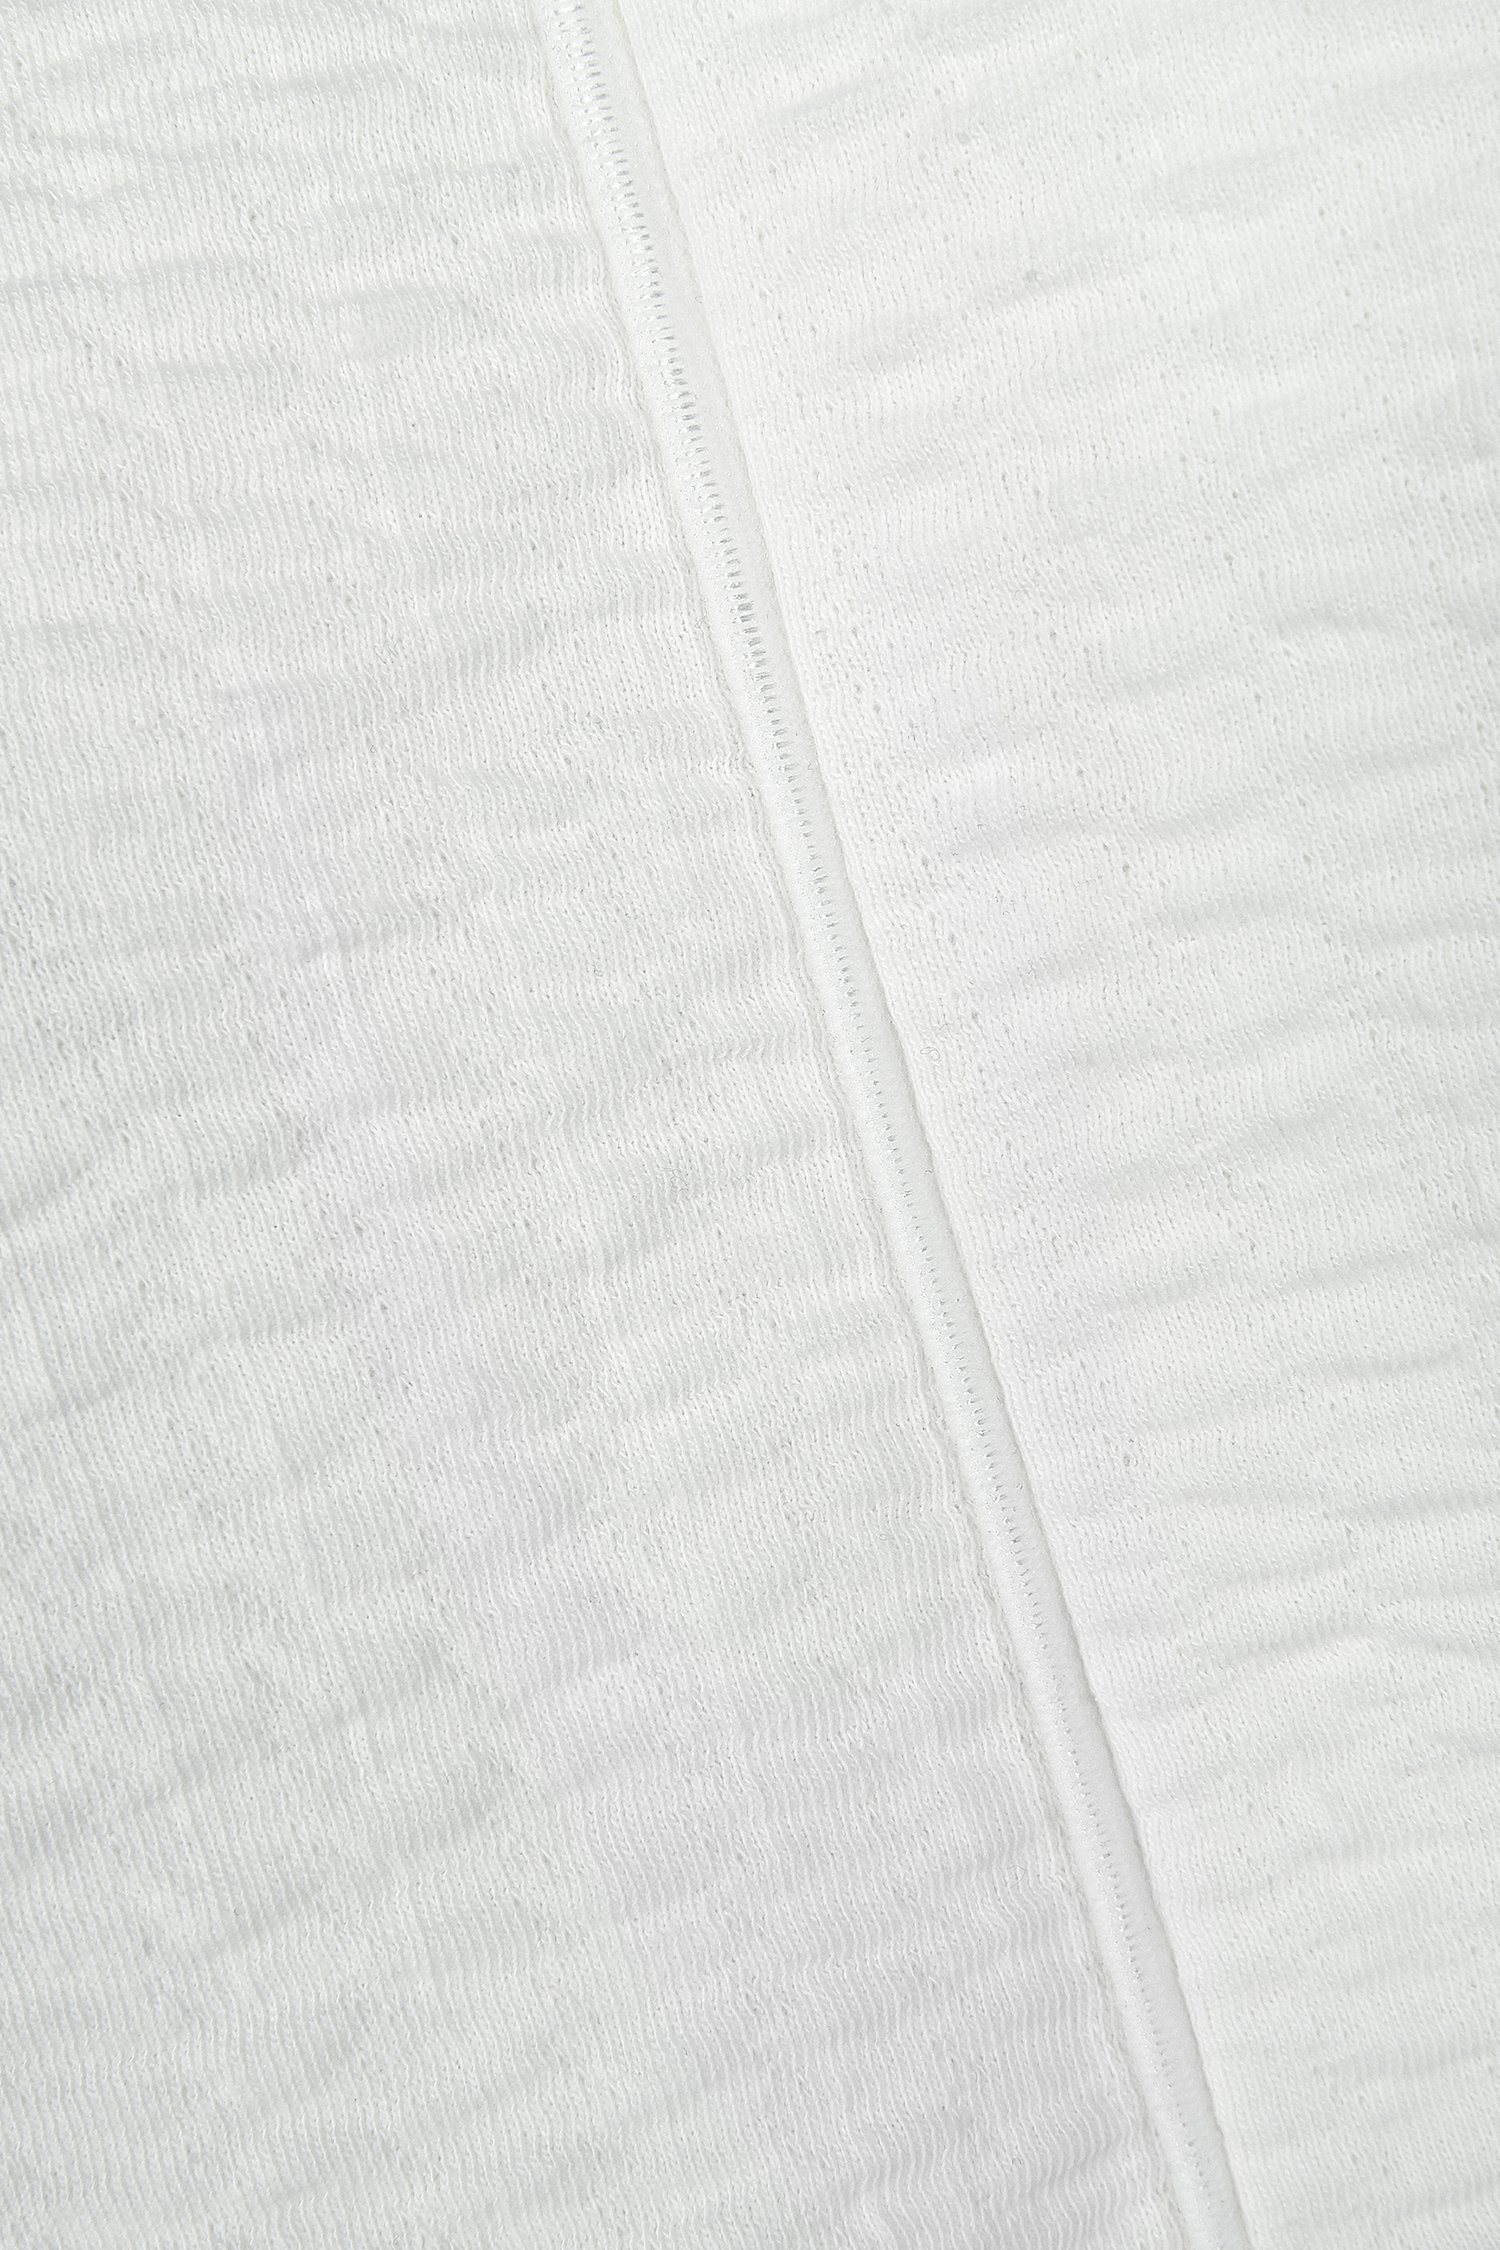 Wit T-shirt met textuur van Bicalla voor Dames